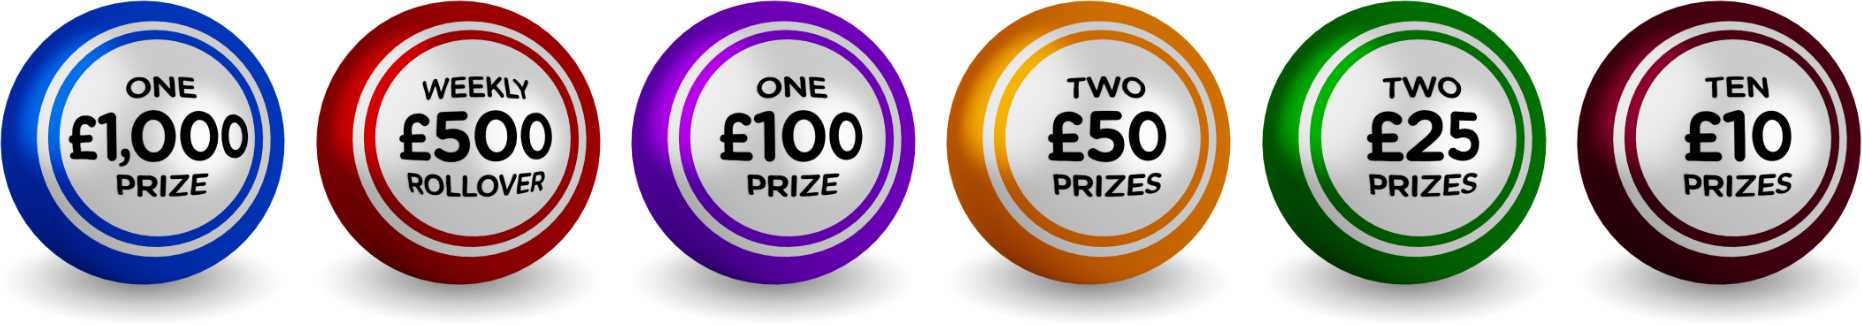 £1,000 Prize, £500 Rollover, £100 Prize, 2x £50 Prize, 2x £25 Prize, 10x £10 Prizes